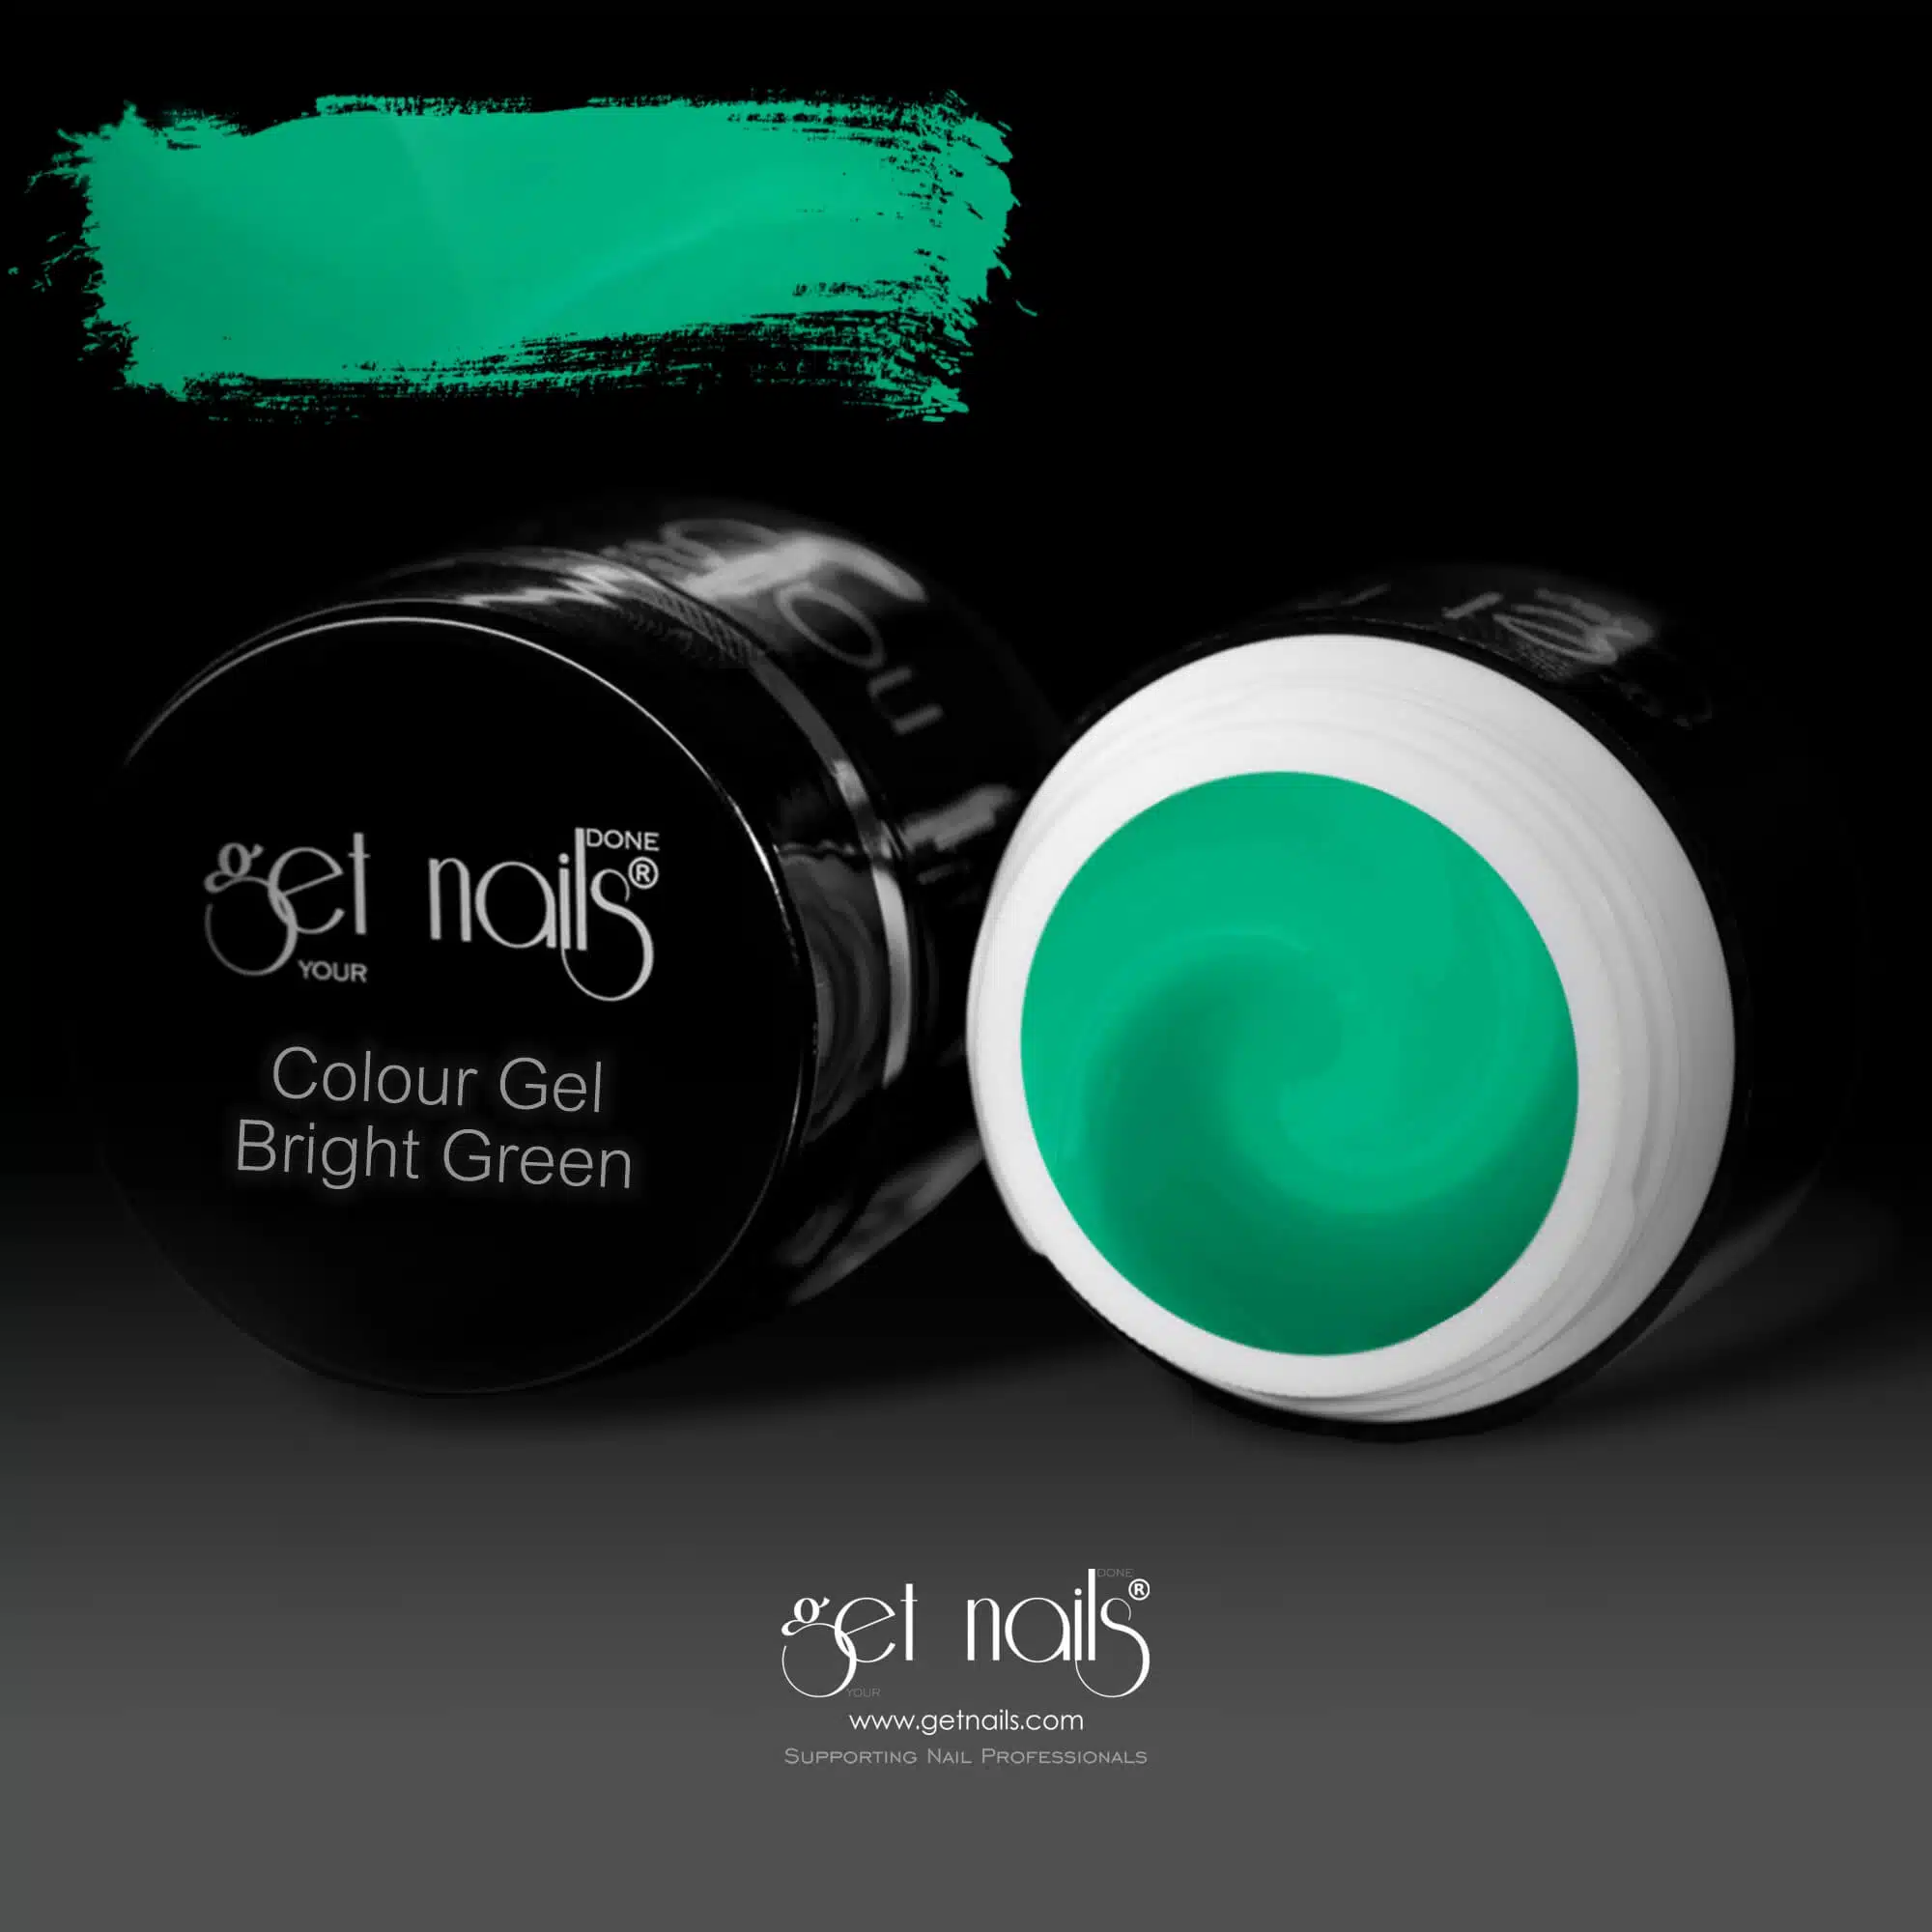 Get Nails Austria - Цветной гель Ярко-зеленый 5г